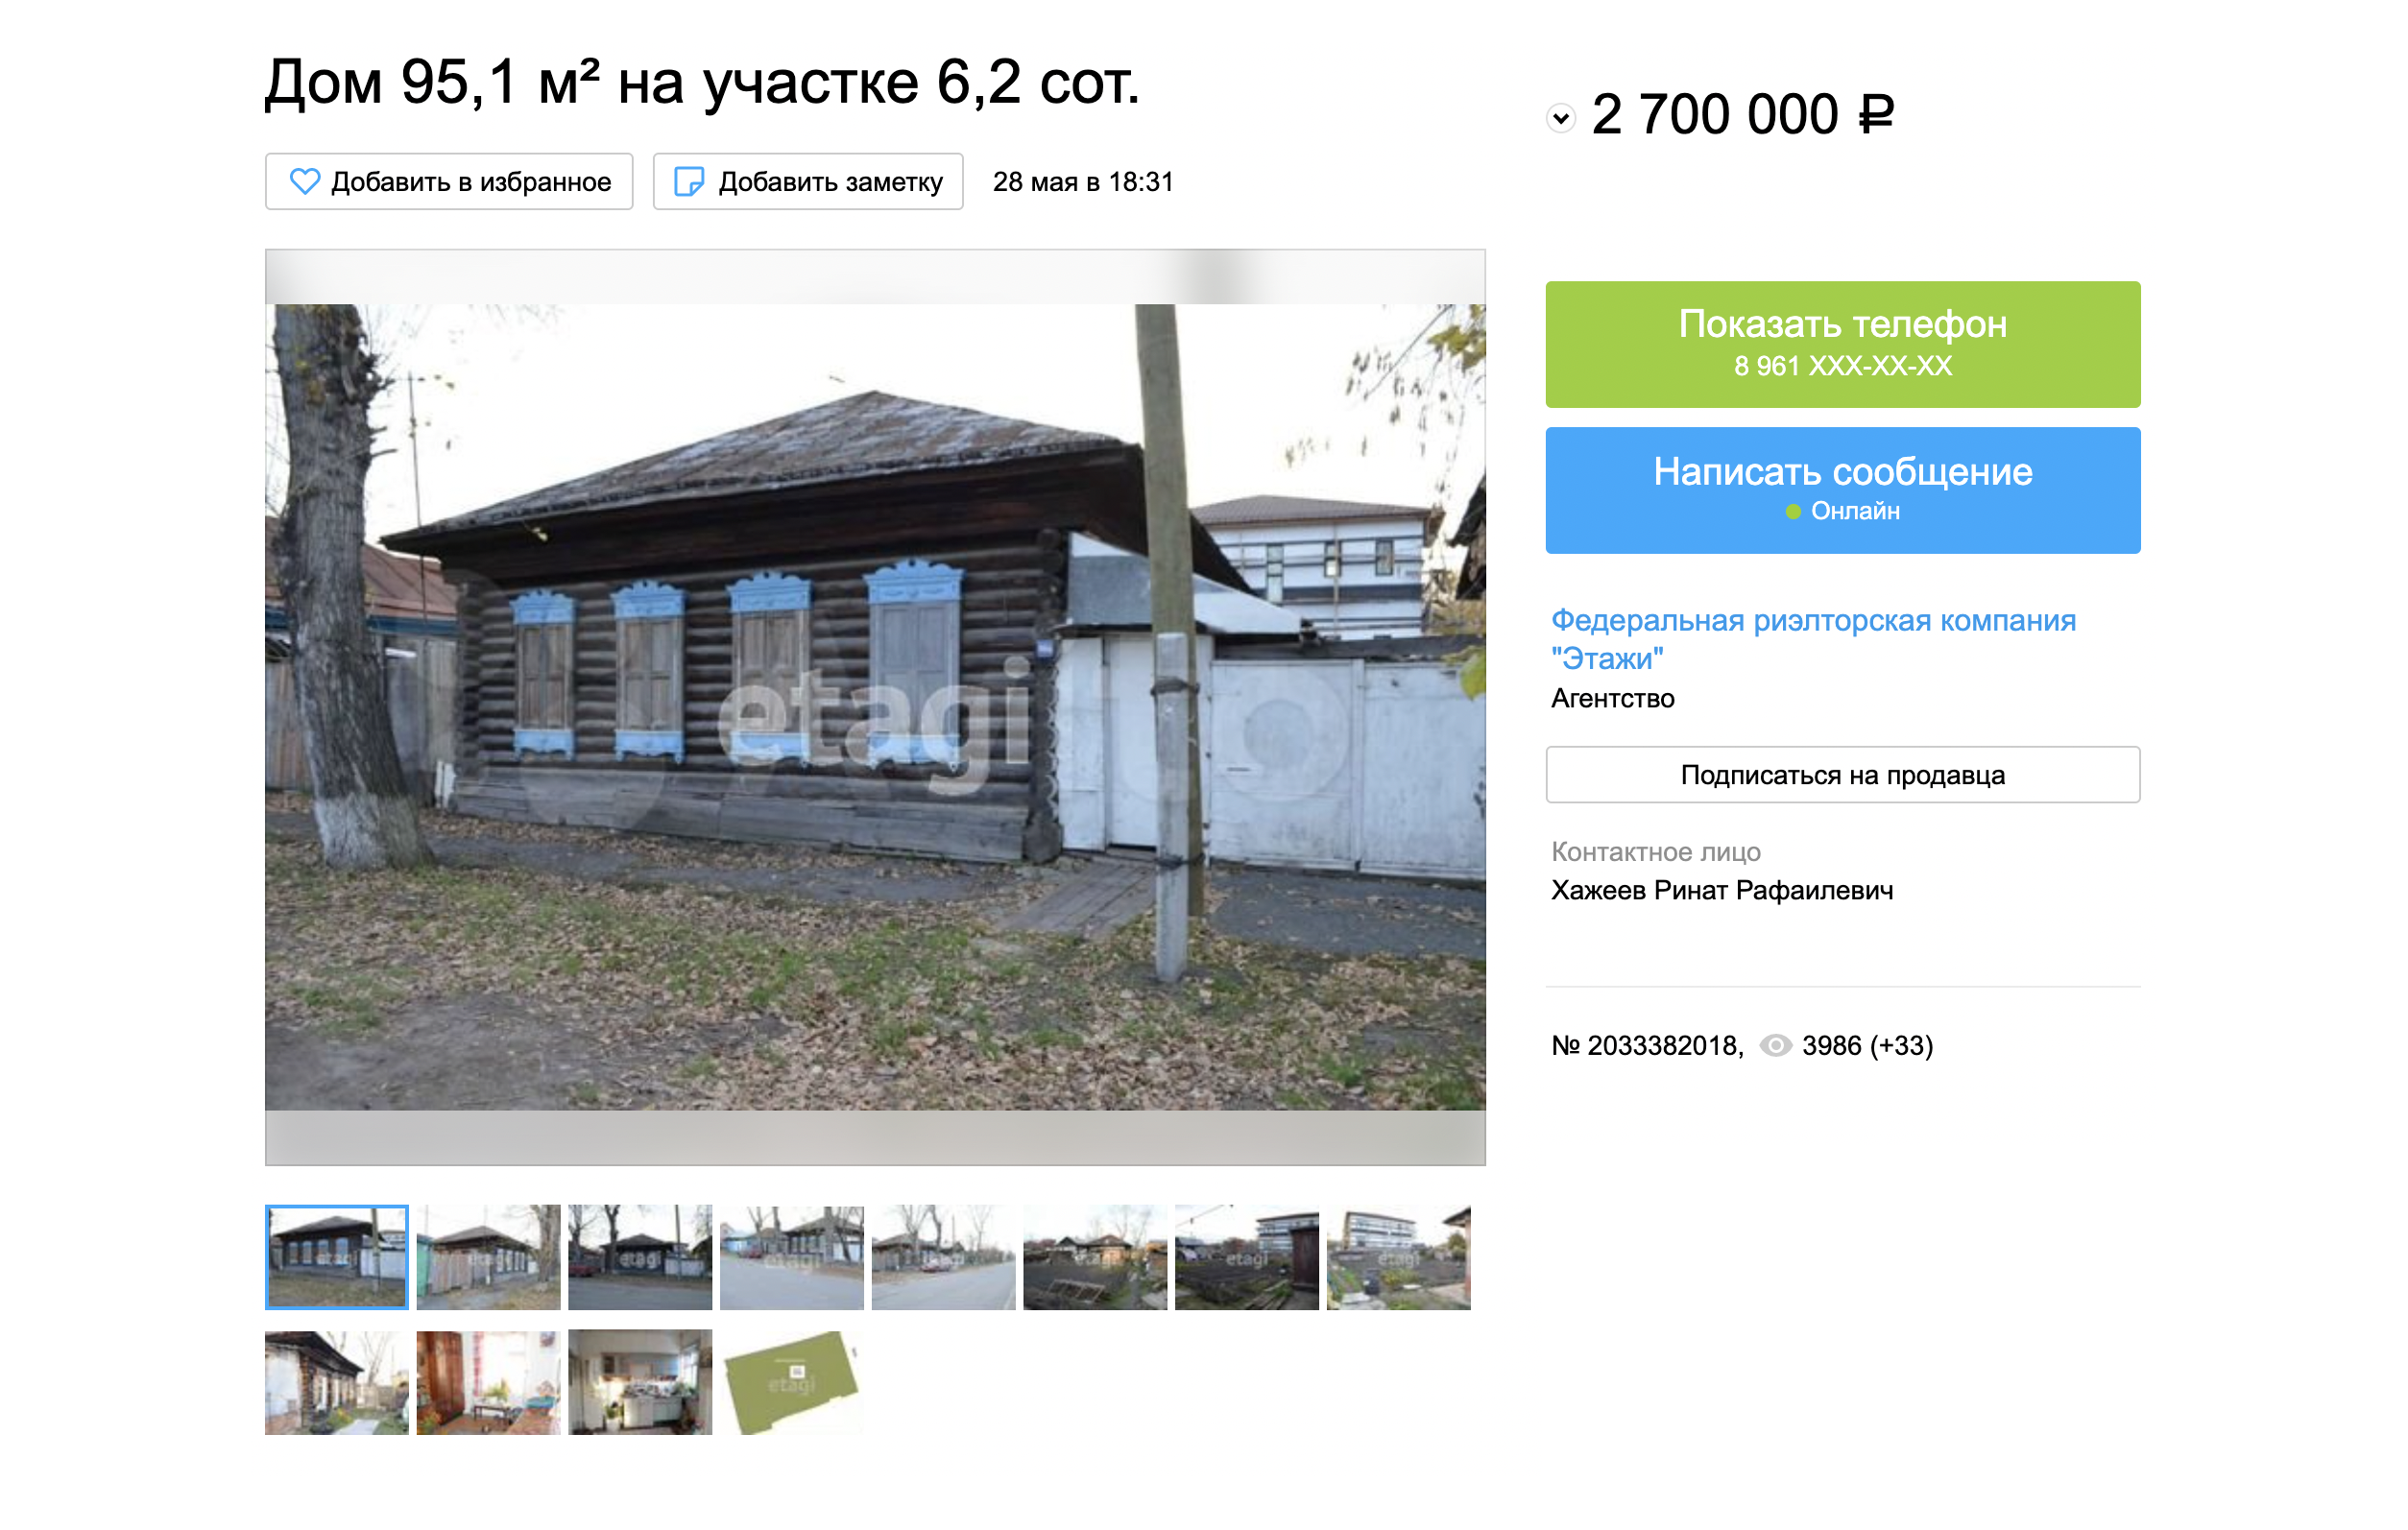 Старый частный дом на продажу в заречной части Тюмени — 2,7 млн рублей